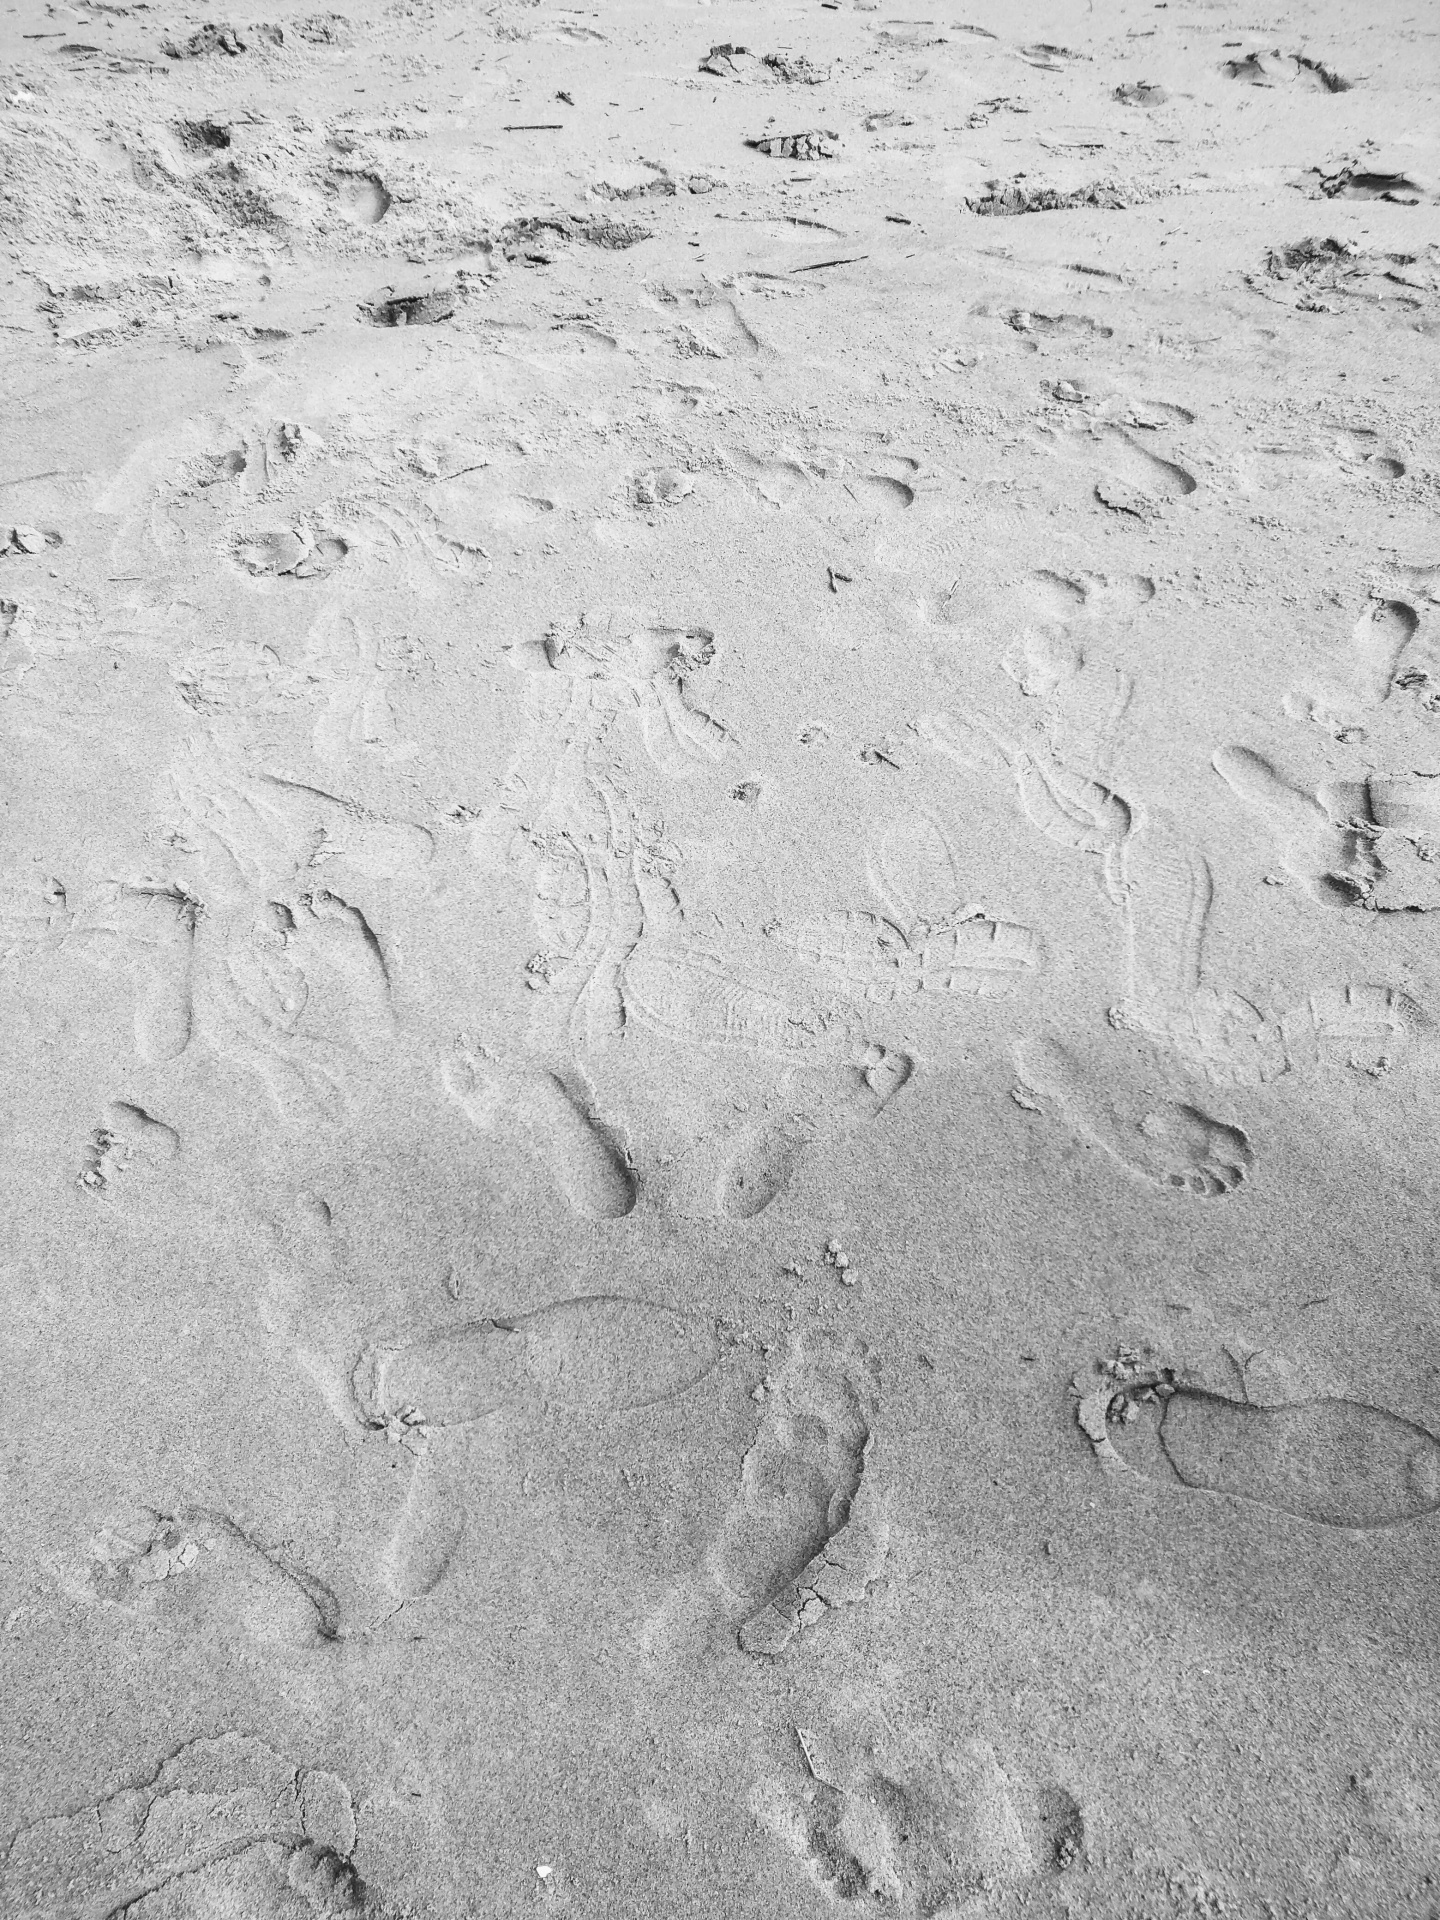 Prints In Sand